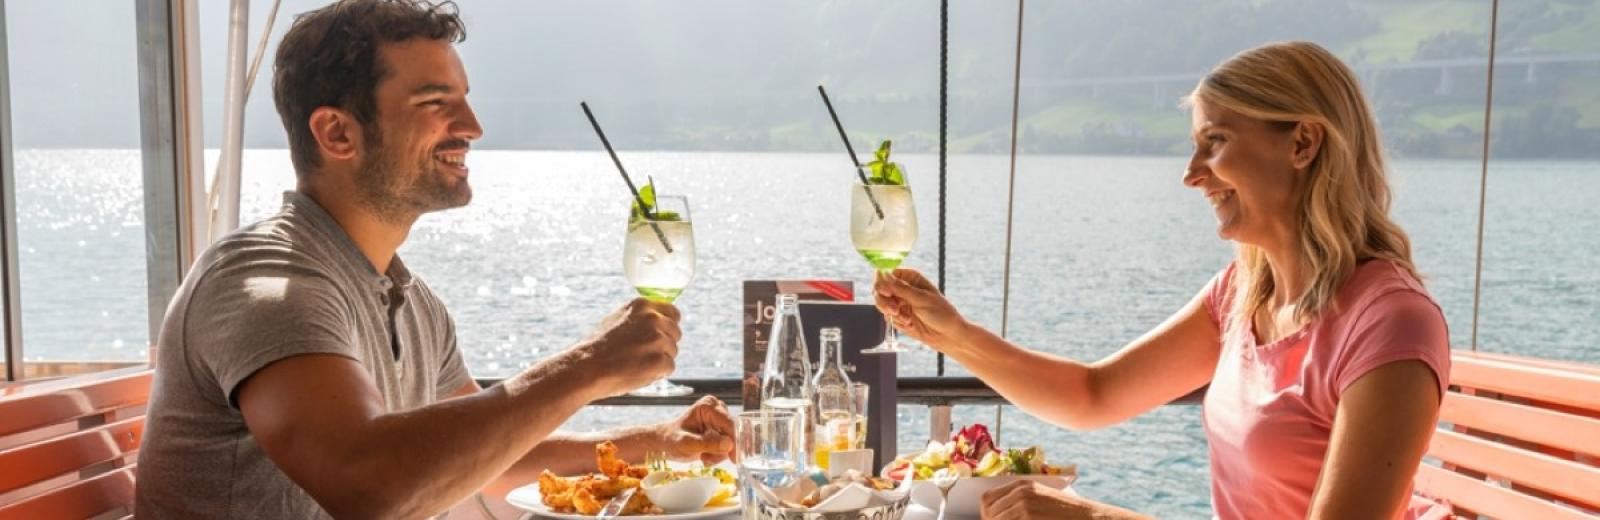 Ein Paar geniesst das Essen an Bord eines Dampfschiffs, Vierwaldstättersee, Zentralschweiz © Swiss Travel System AG, 2019, Fotograf: Daniel Ammann.